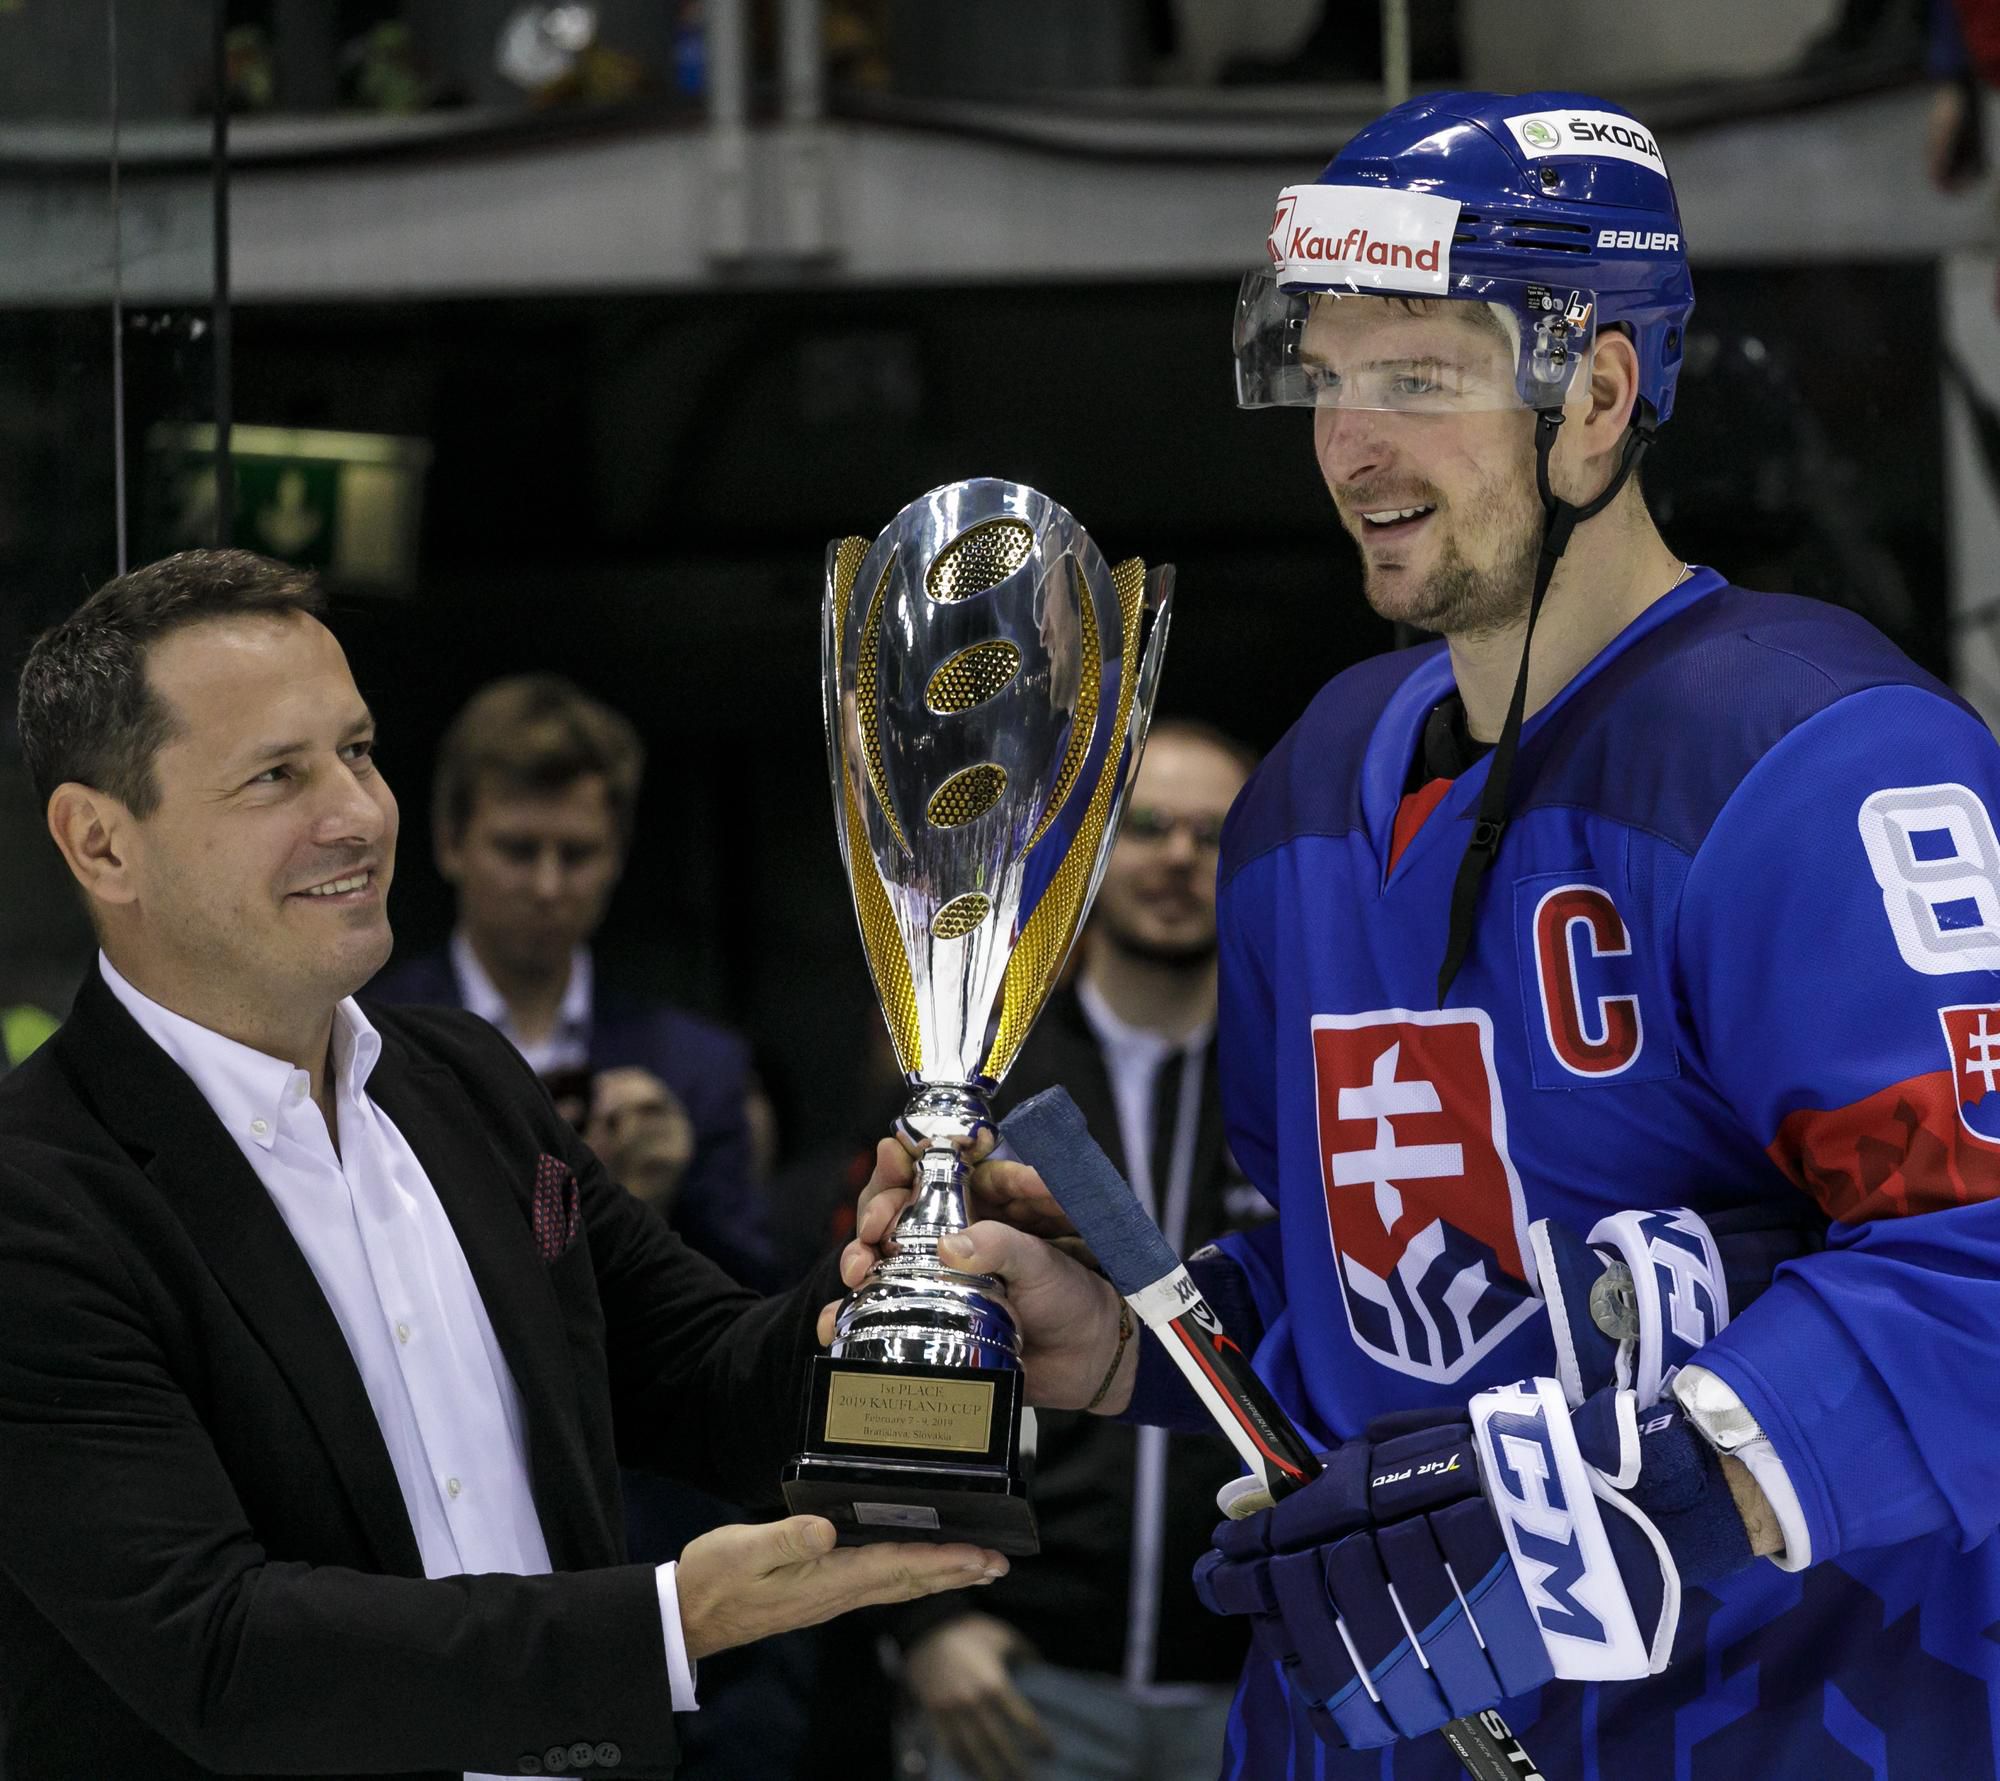 Prezident SZĽH Martin Kohút odovzdáva pohár kapitánovi slovenského tímu Michalovi Sersenovi  po víťazstve nad Olympijským tímom Ruska v zápase hokejového turnaja Kaufland Cup.